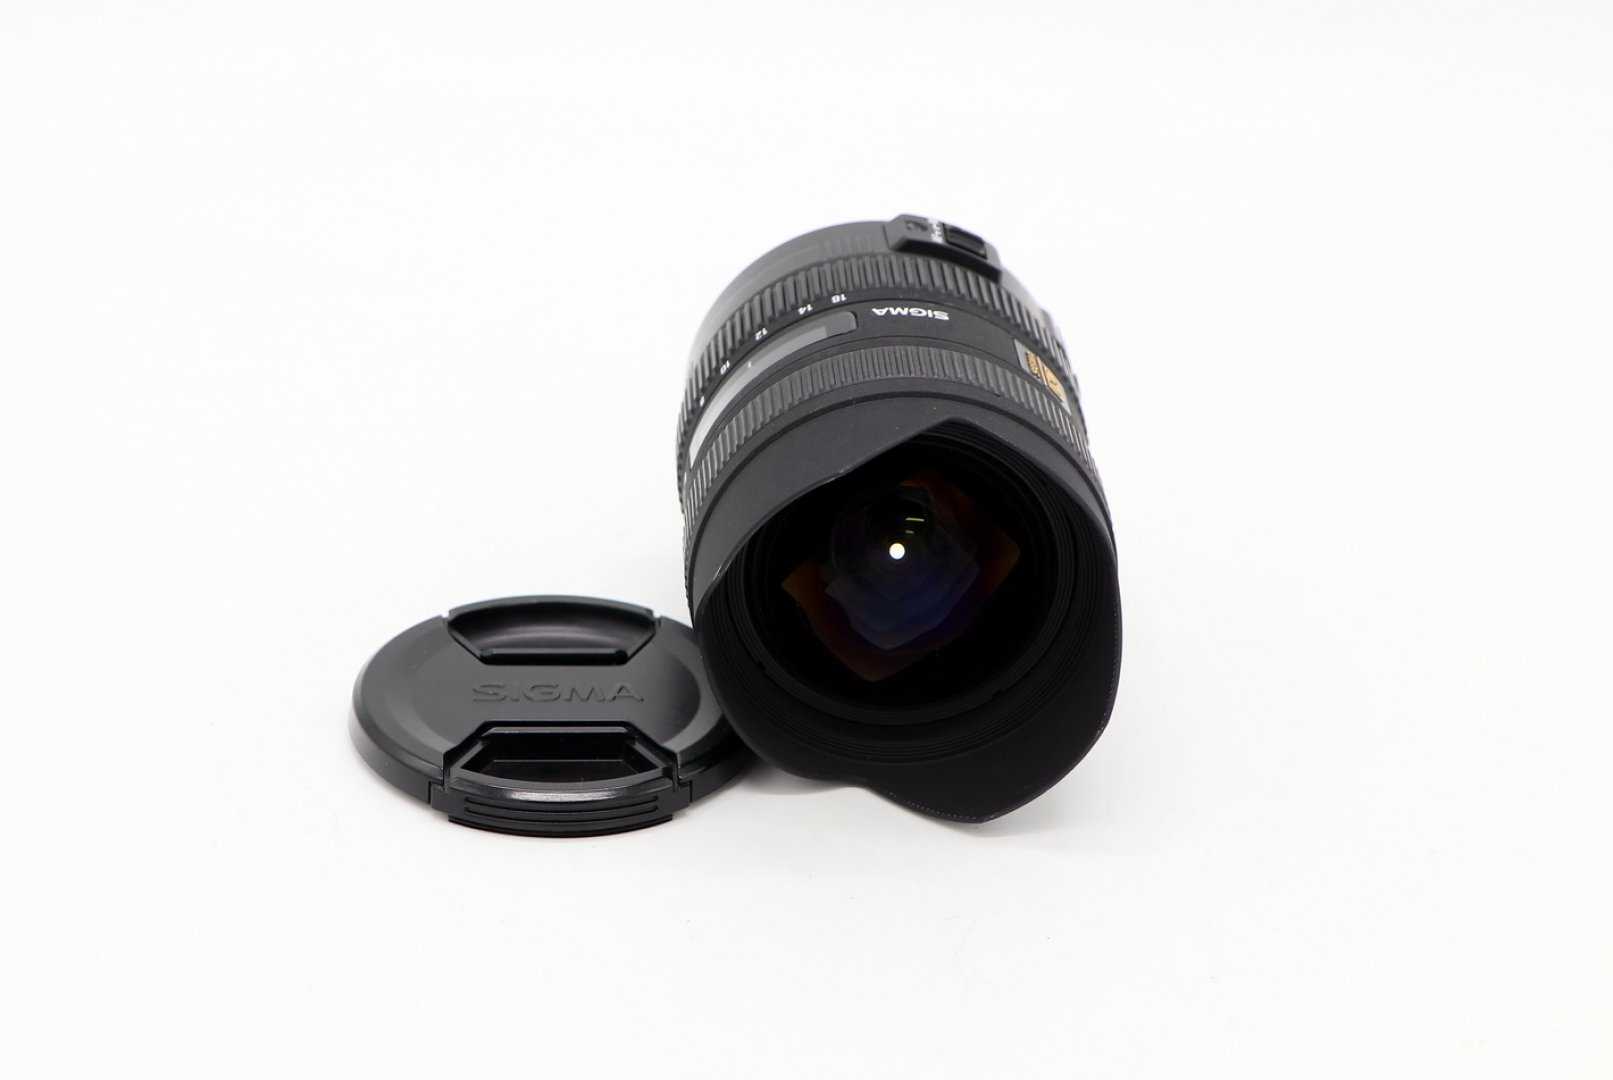 Sigma af 8-16mm f/4.5-5.6 dc hsm sigma sa - купить , скидки, цена, отзывы, обзор, характеристики - объективы для фотоаппаратов